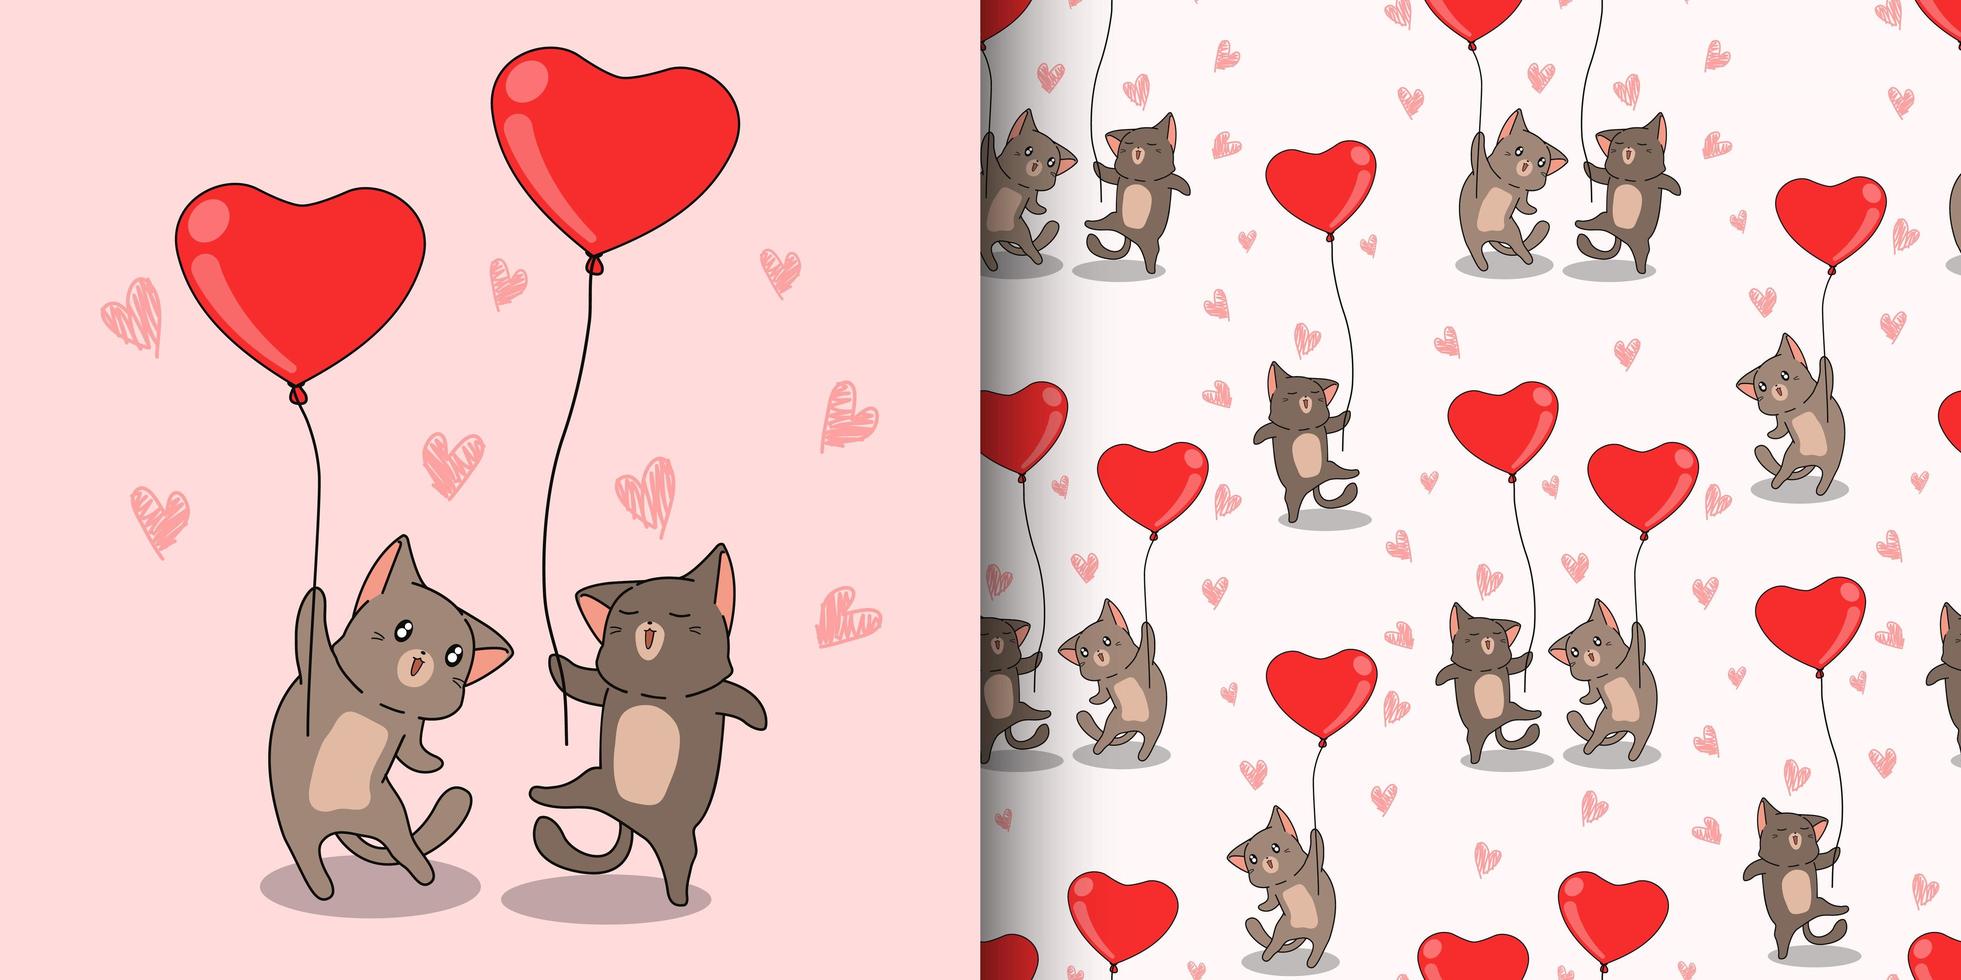 personnages de chat kawaii portant un motif de ballons coeur rouge vecteur